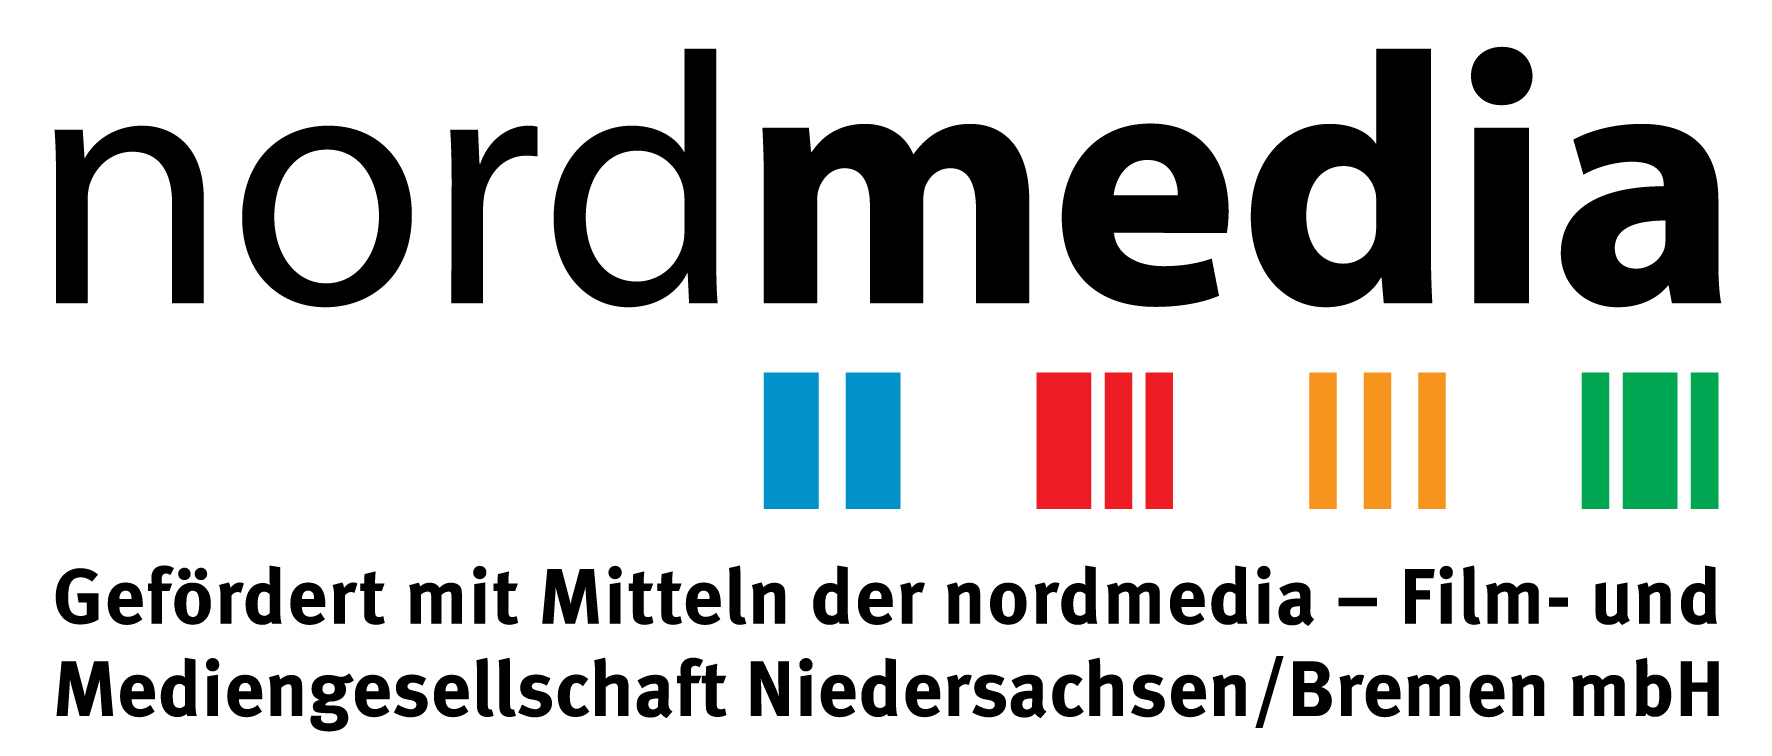 nordmedia_Logo_deutsch_300dpi_15cm